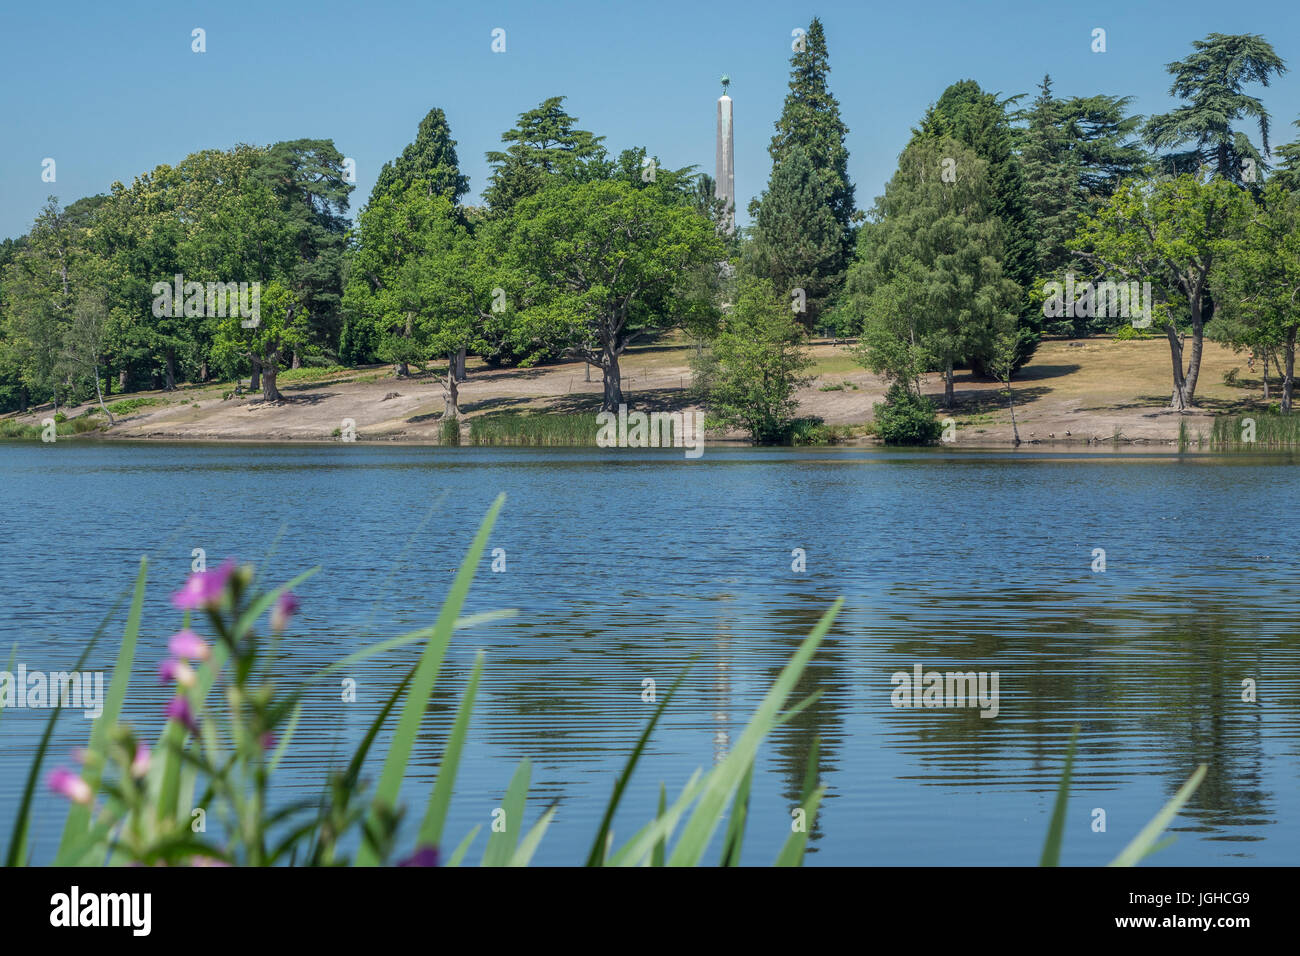 England, Surrey/Berkshire, Windsor Great Park, Obelisk pond Stock Photo